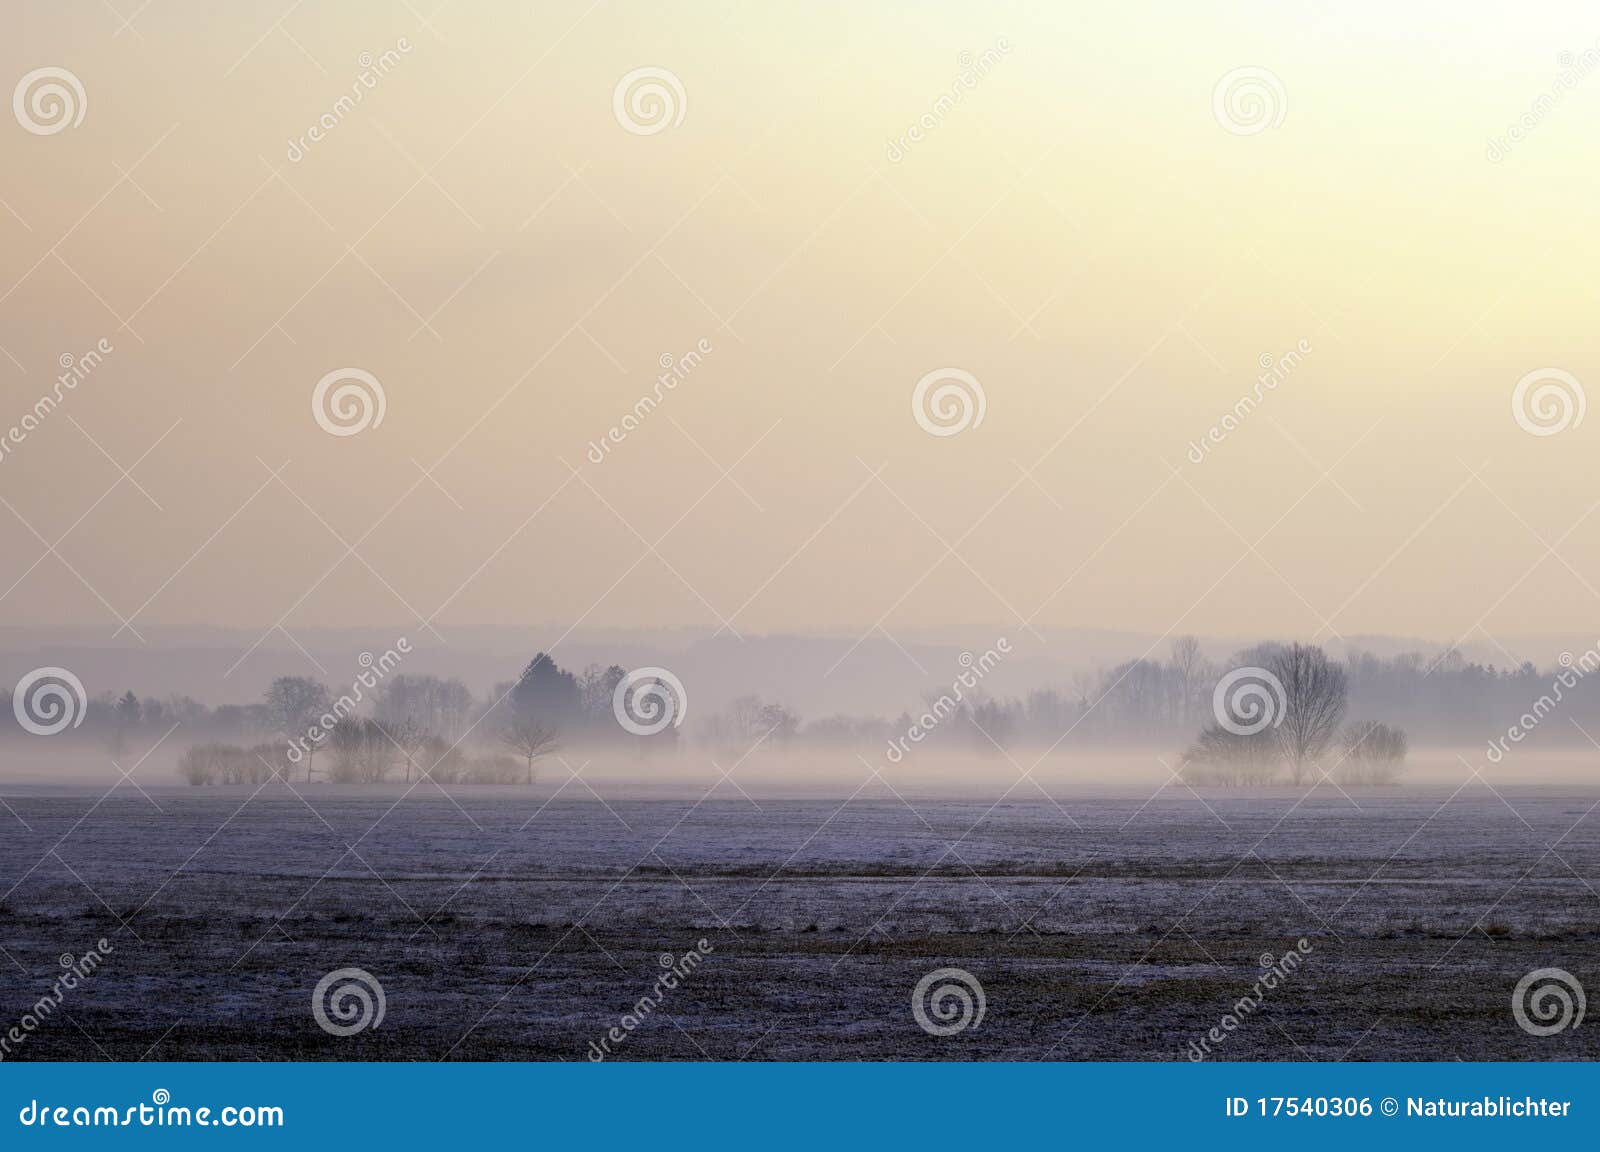 misty moor landscape